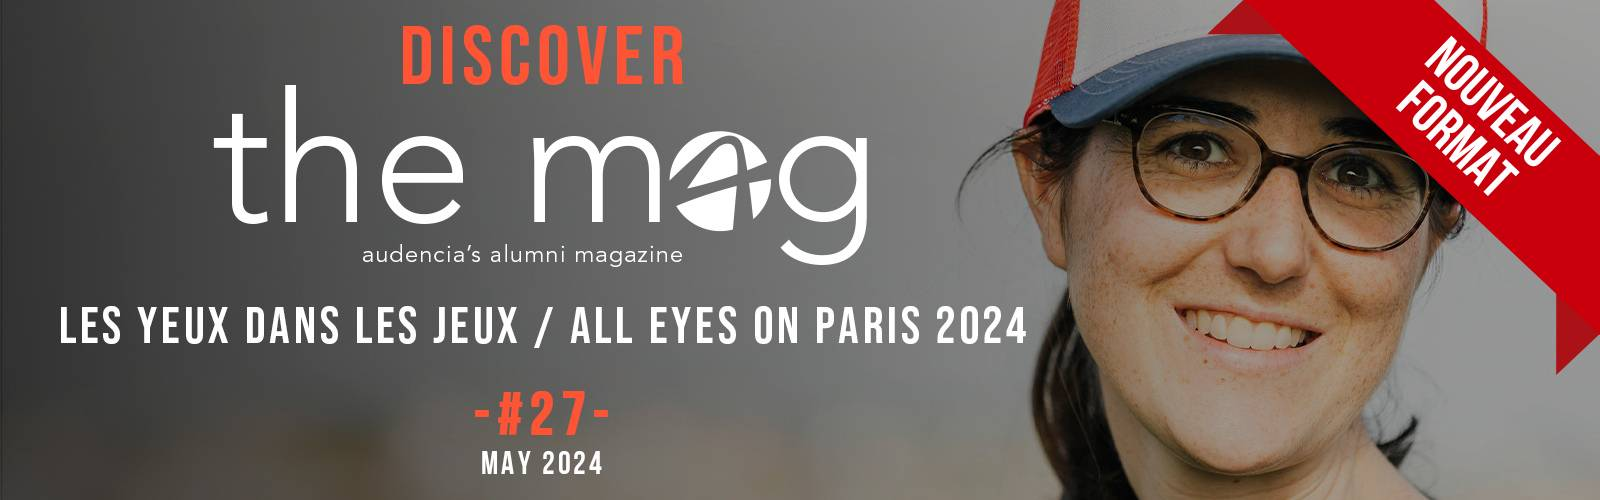 The Mag #27 - "Les yeux dans les jeux !"